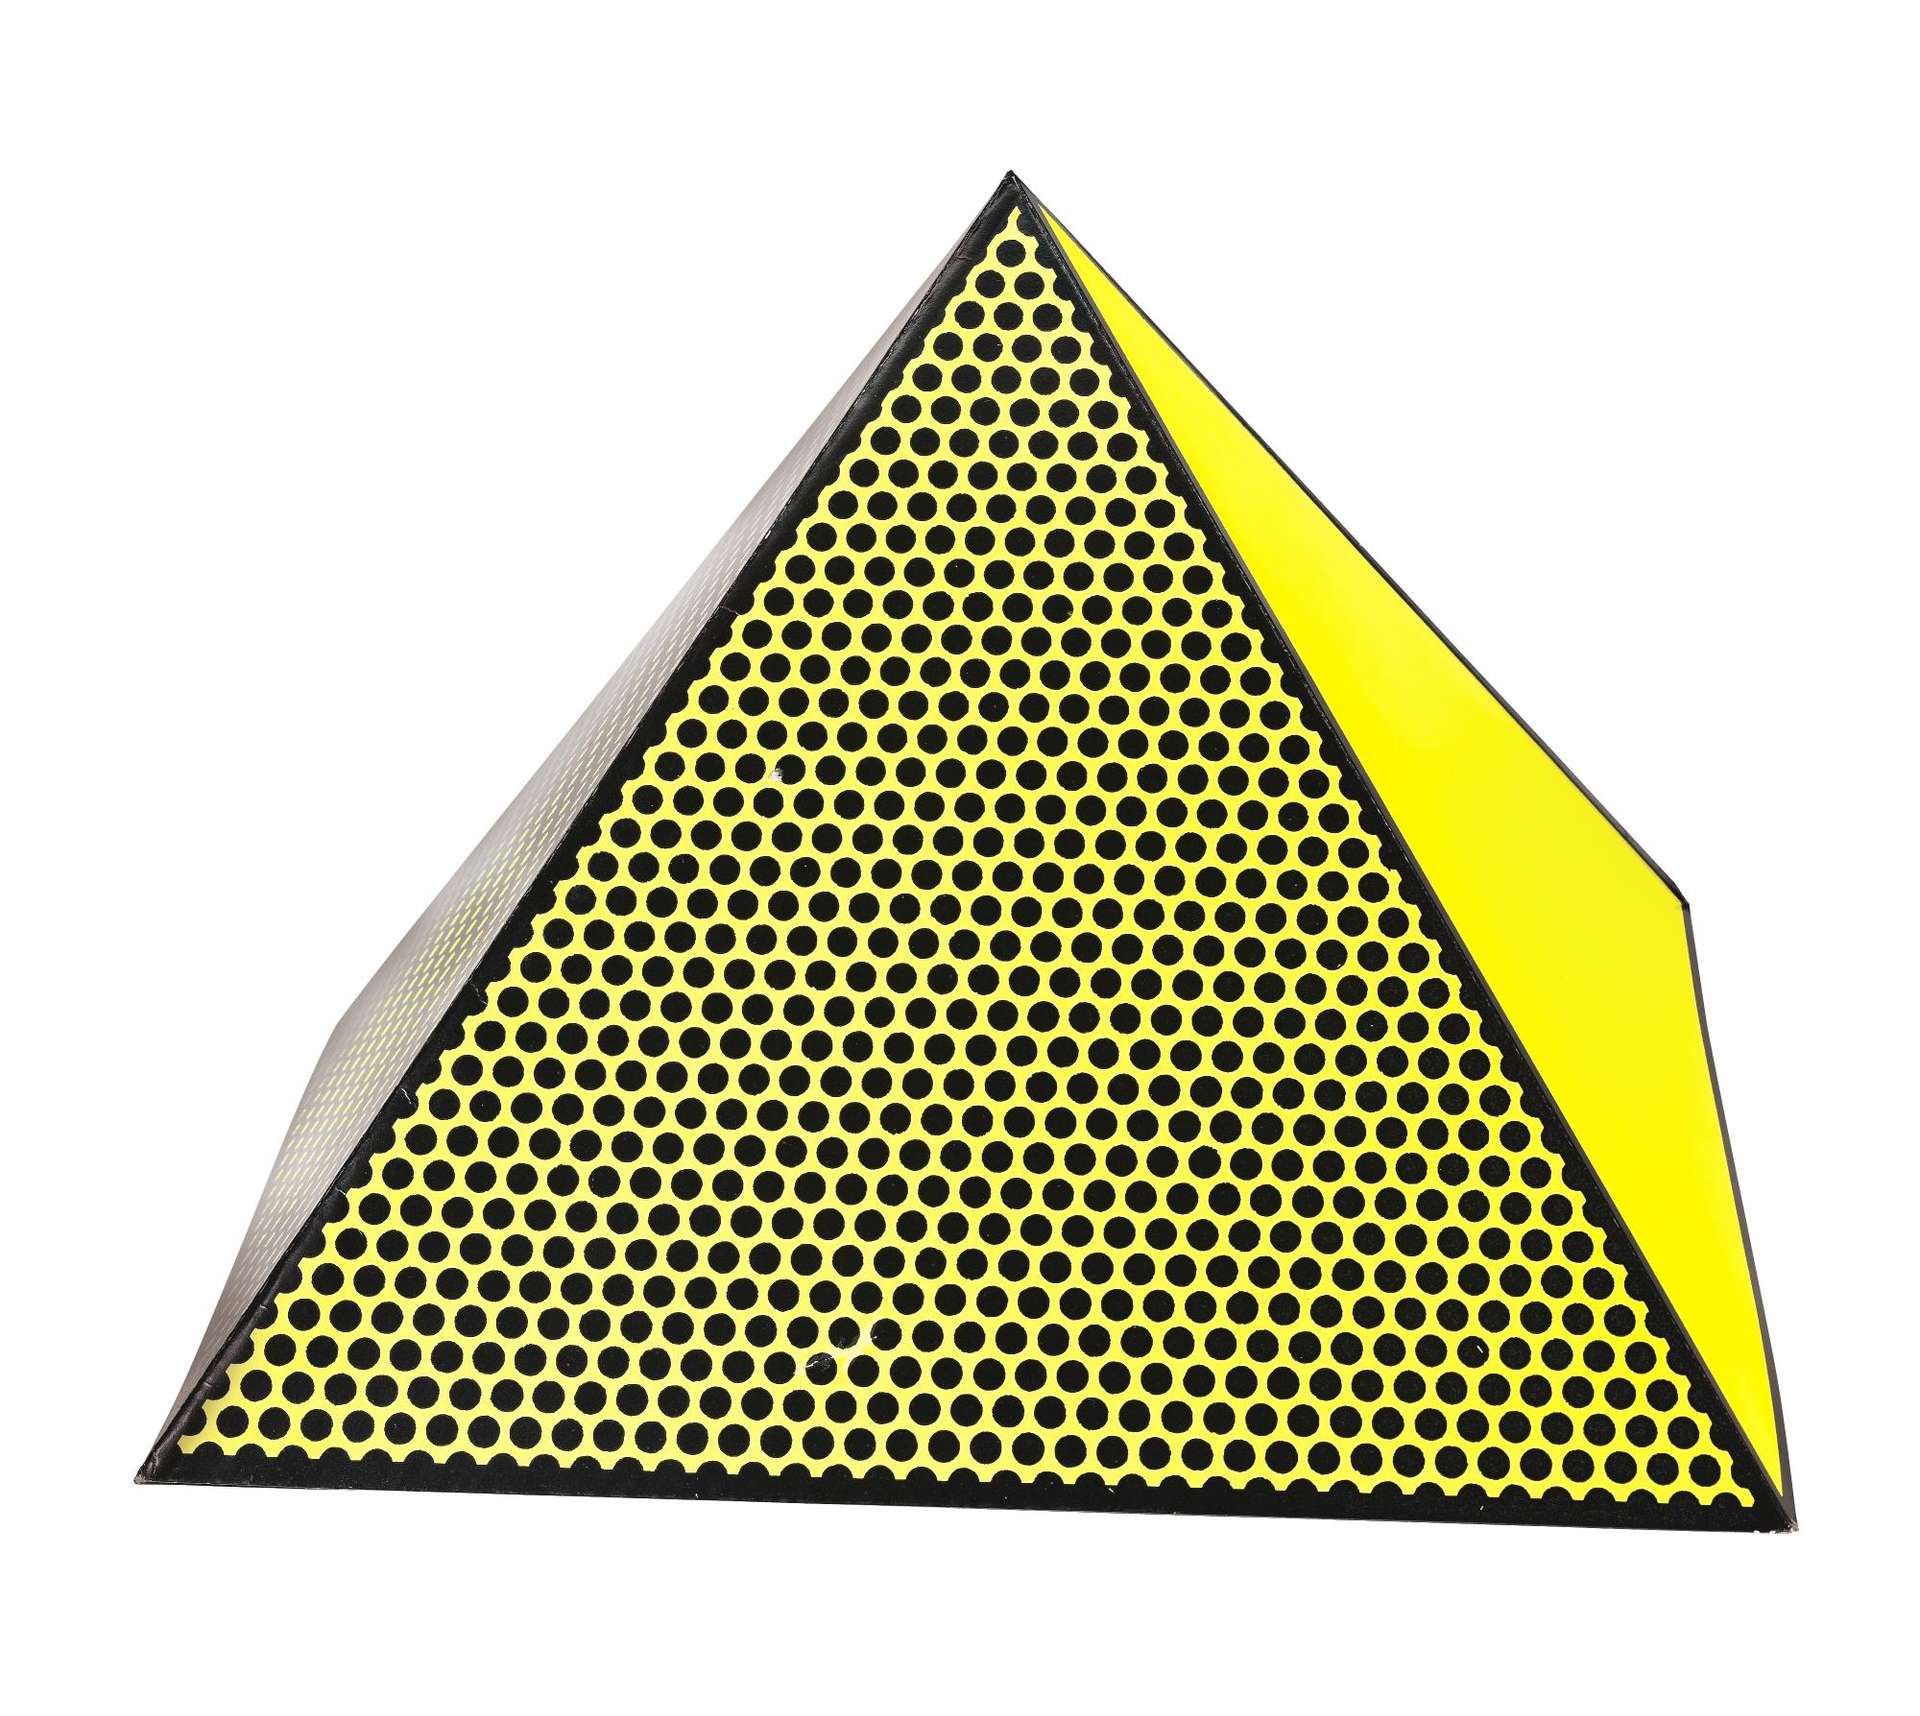 Pyramid - Signed Print by Roy Lichtenstein 1968 - MyArtBroker